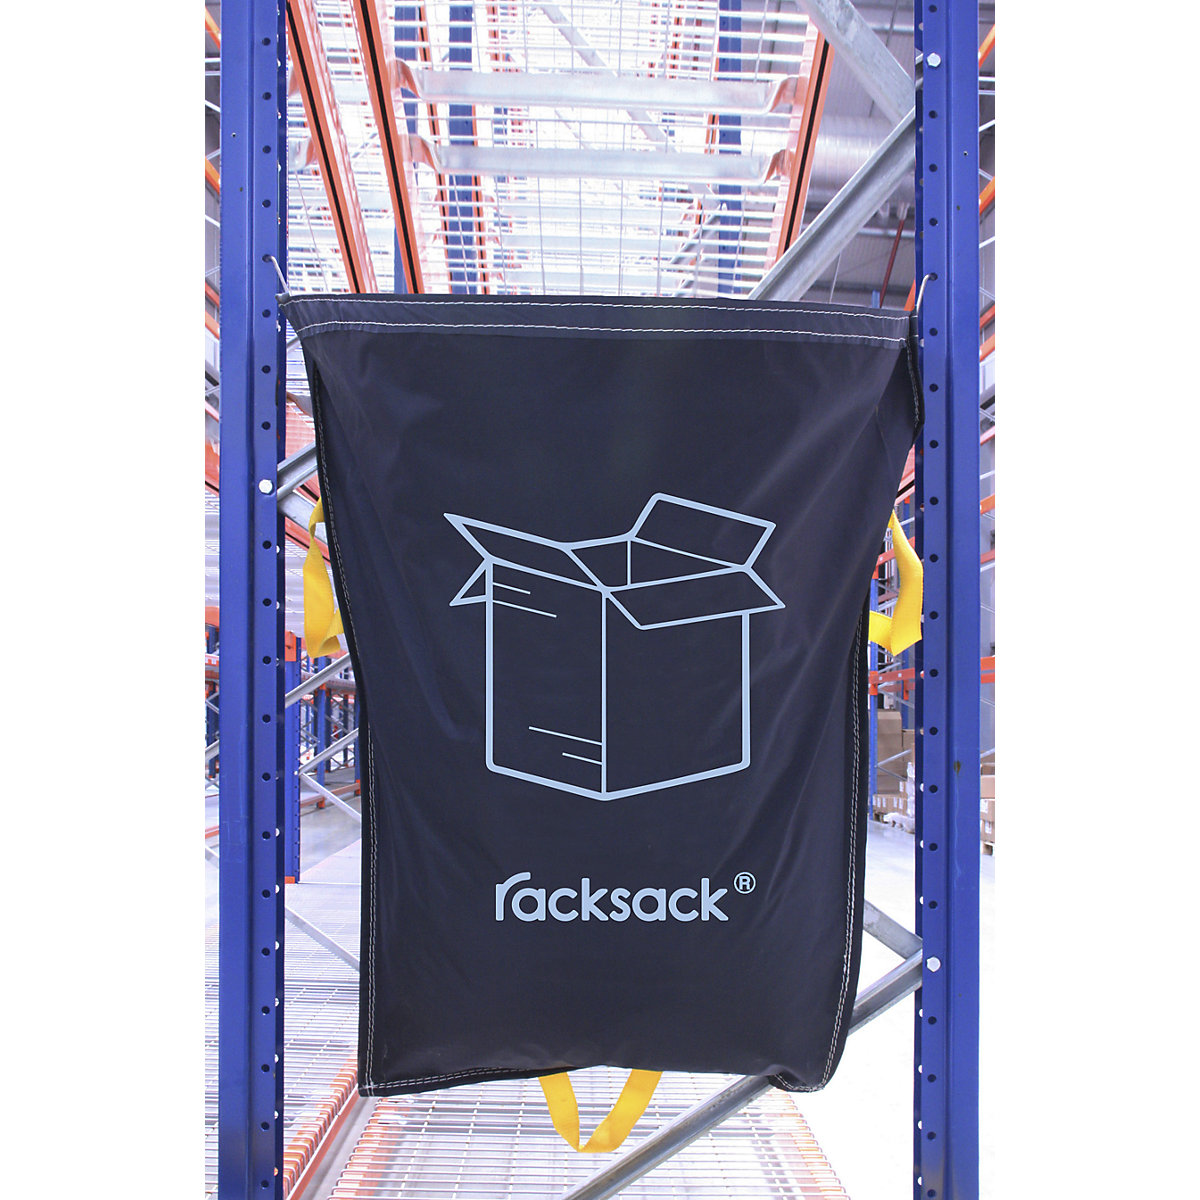 Racksack®, Volumen 160 l, Motiv Kartonagen, blau